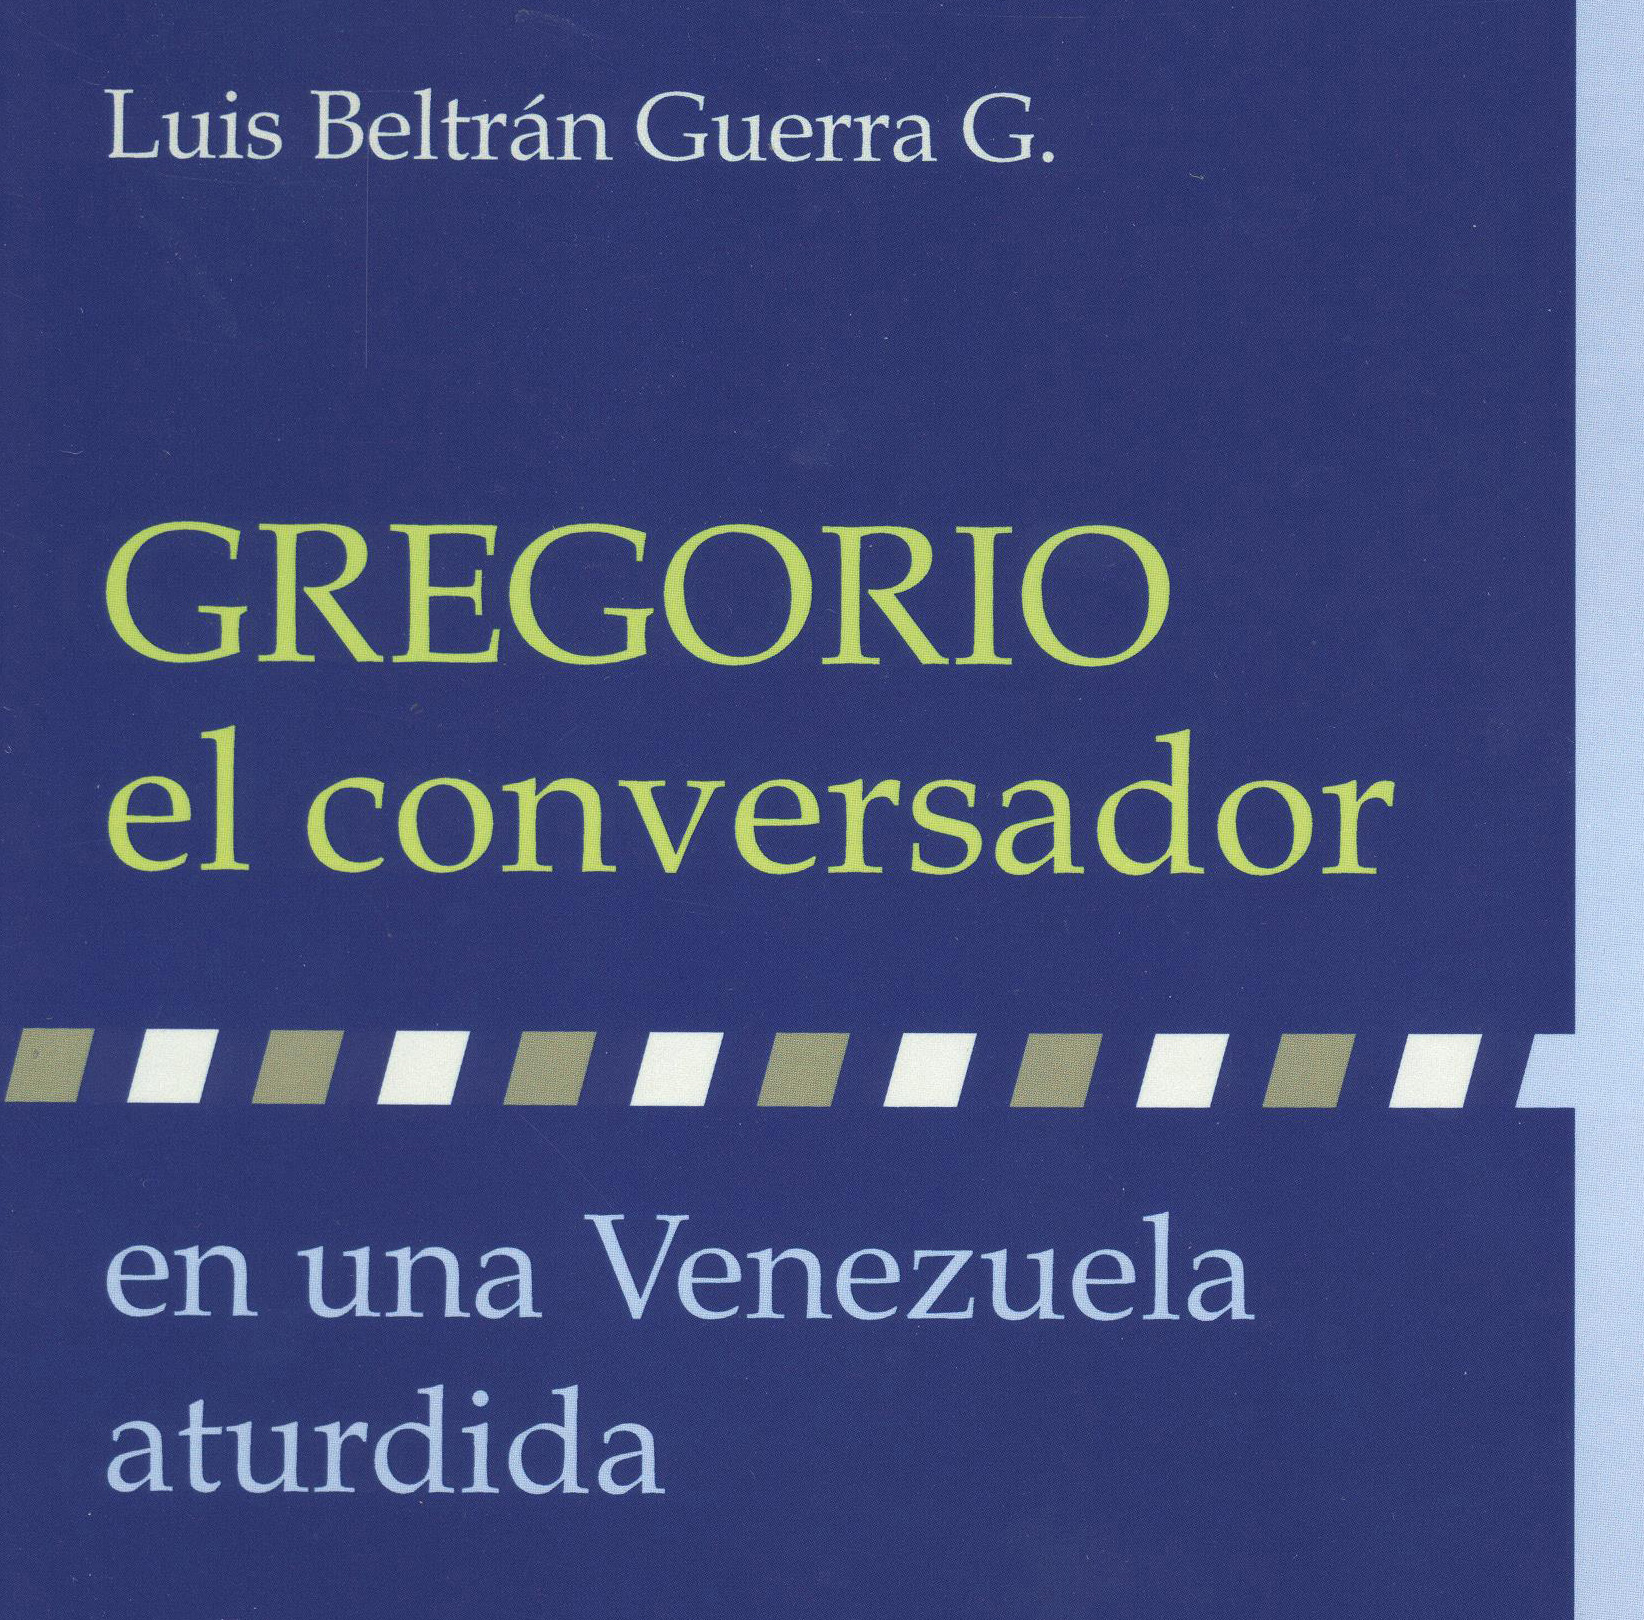 Luis Beltrán Guerra bautizará sus libros este jueves en El Nacional - 0